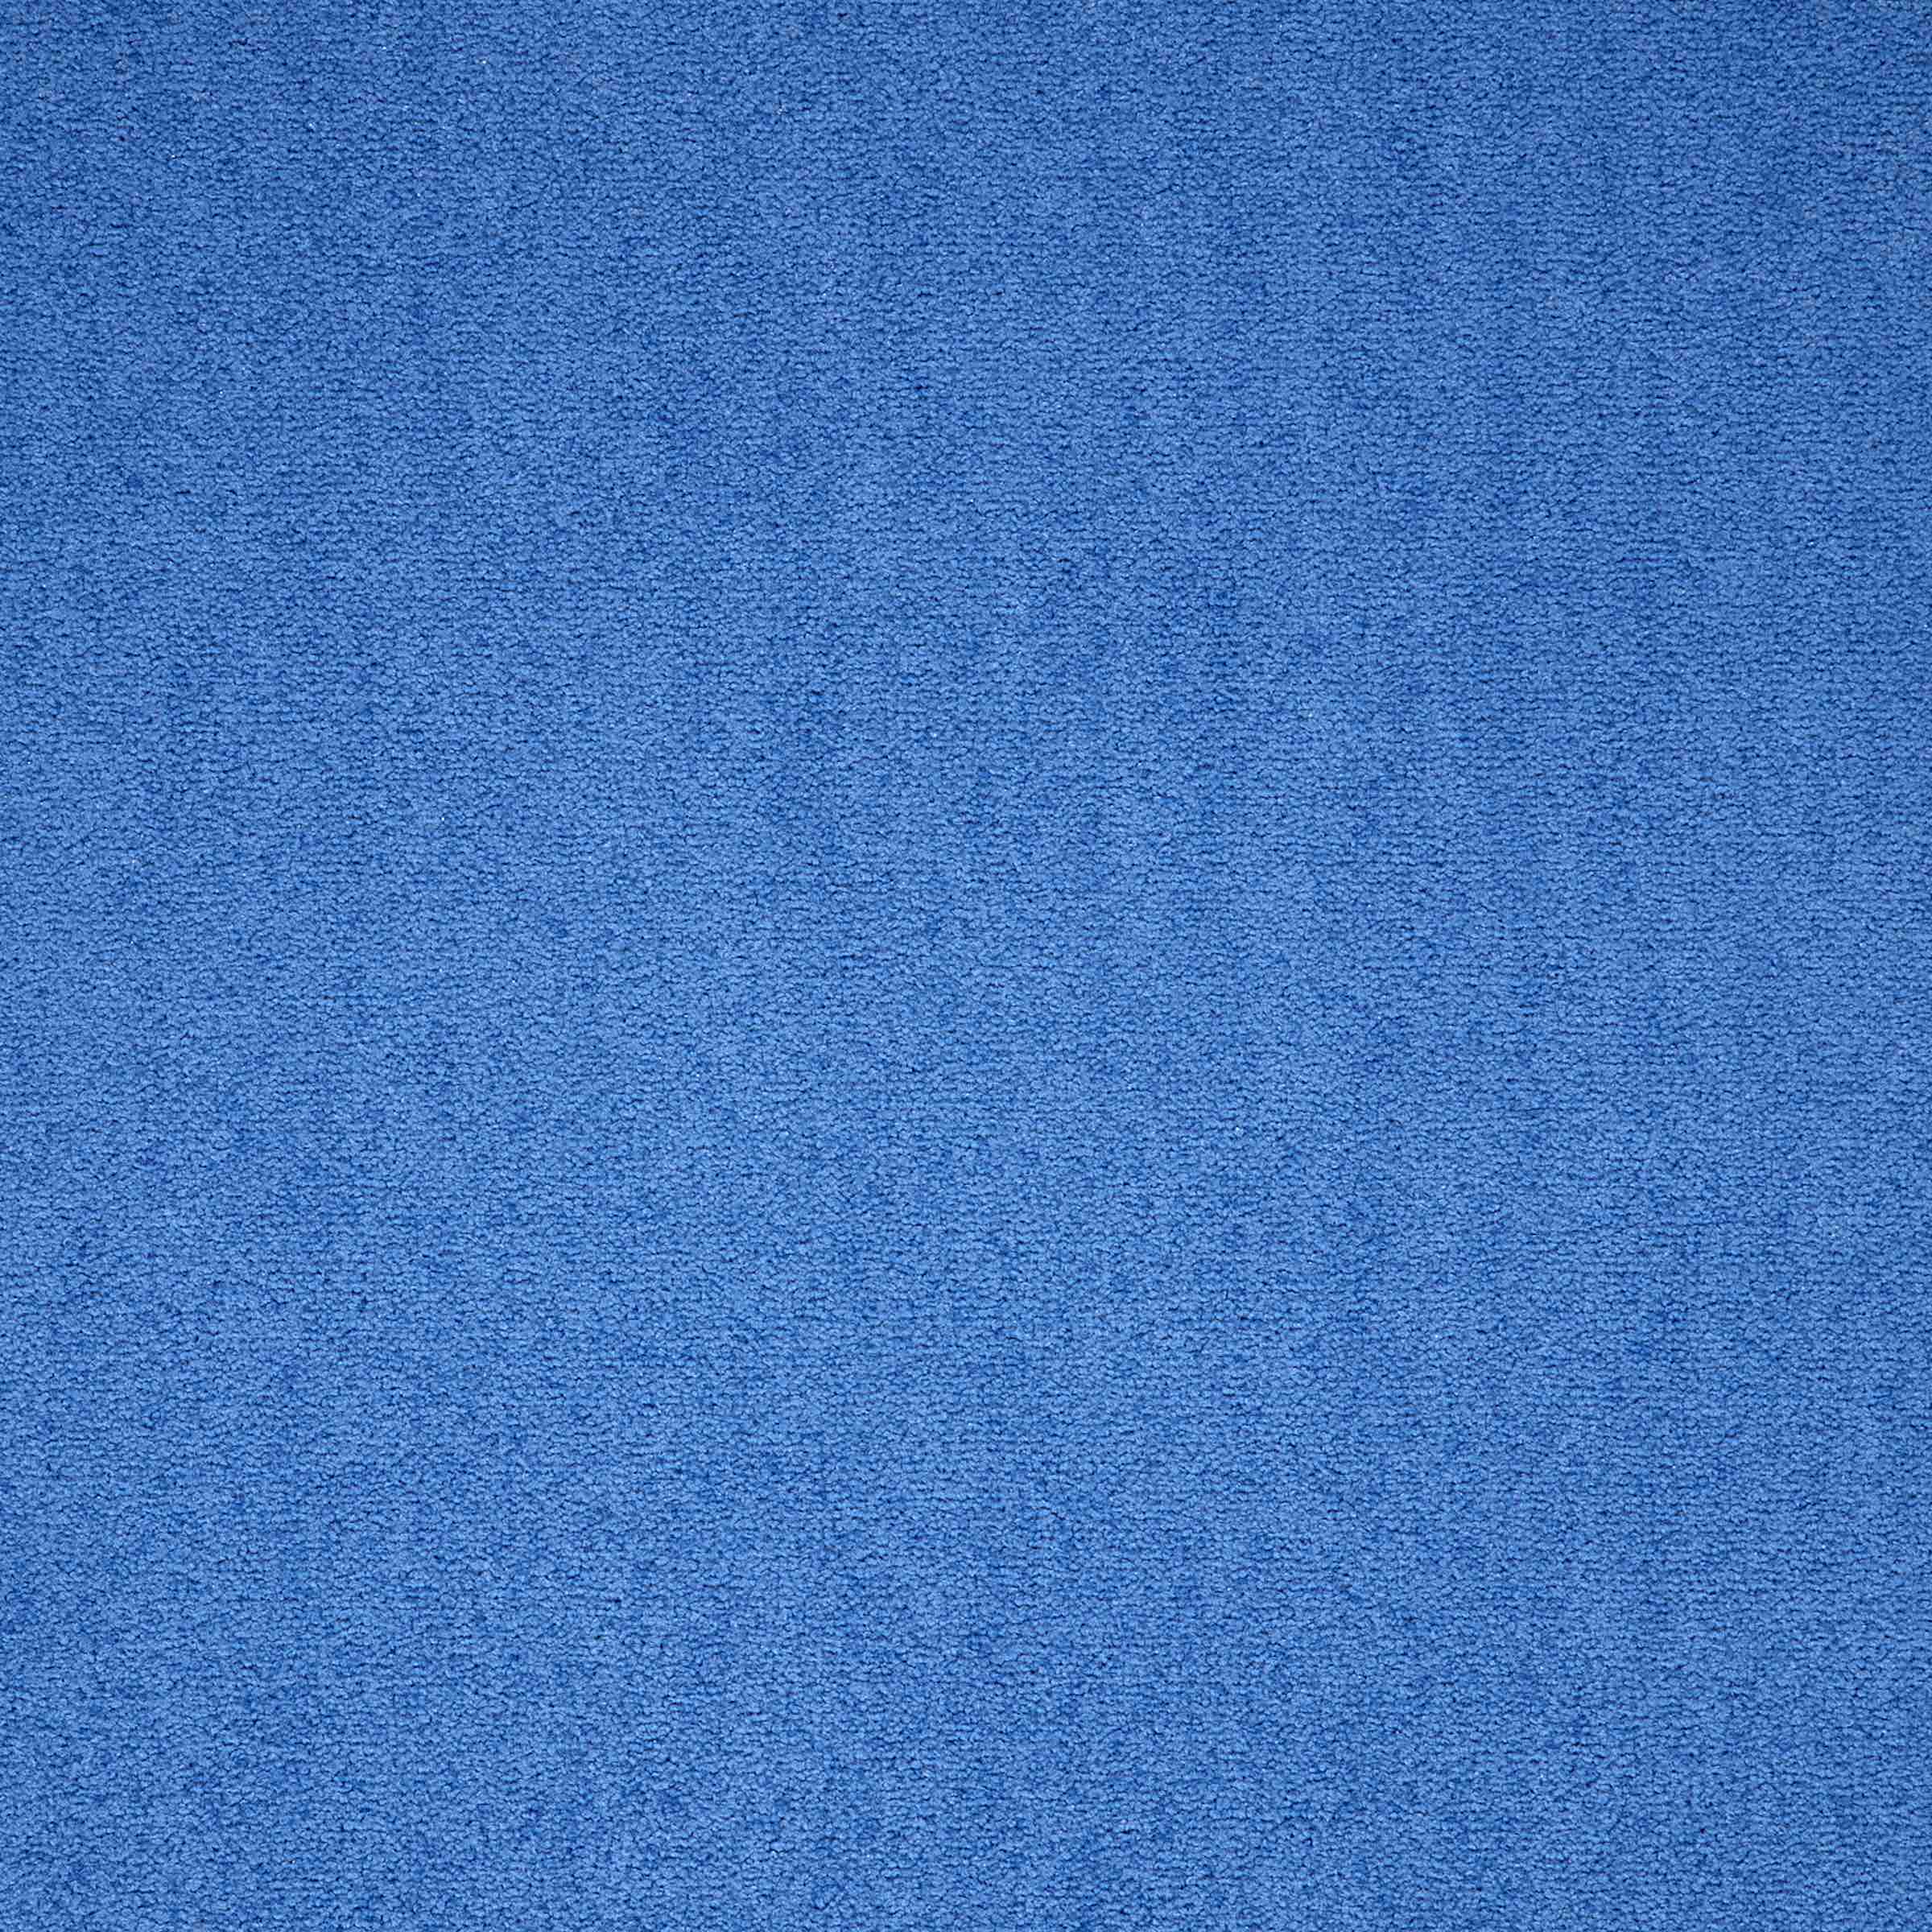 Maestro | Celestial Blue, 569 | Paragon Carpet Tiles | Commercial Carpet Tiles